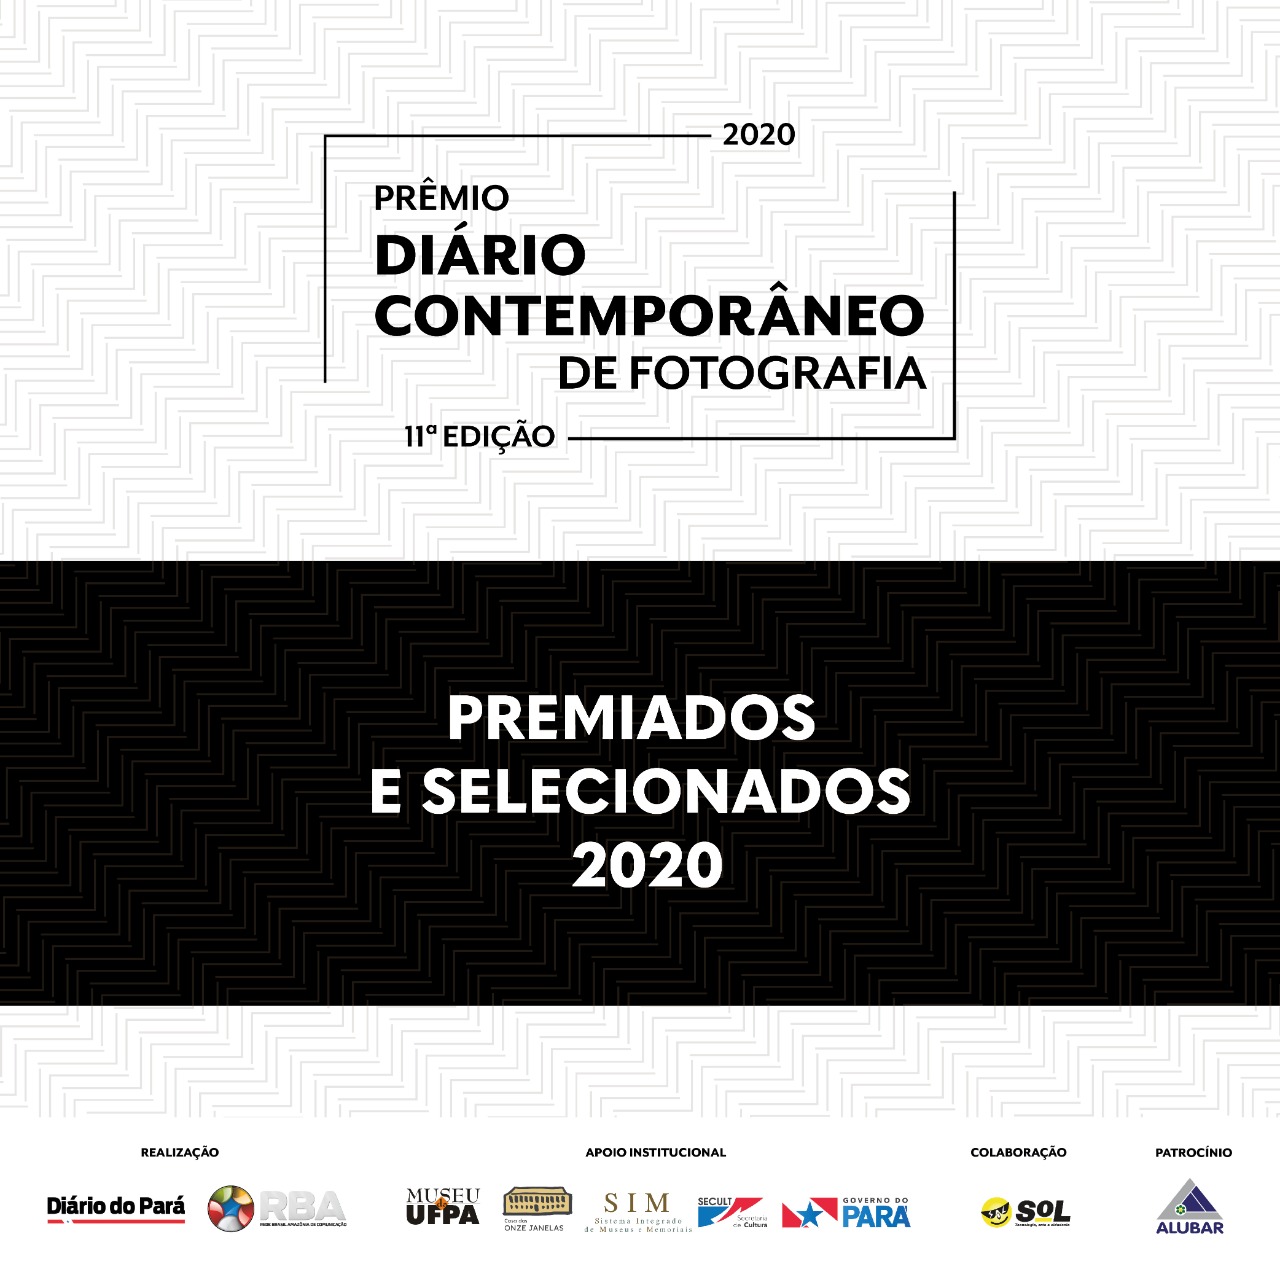 Diário Contemporâneo divulga premiados e selecionados da 11ª edição